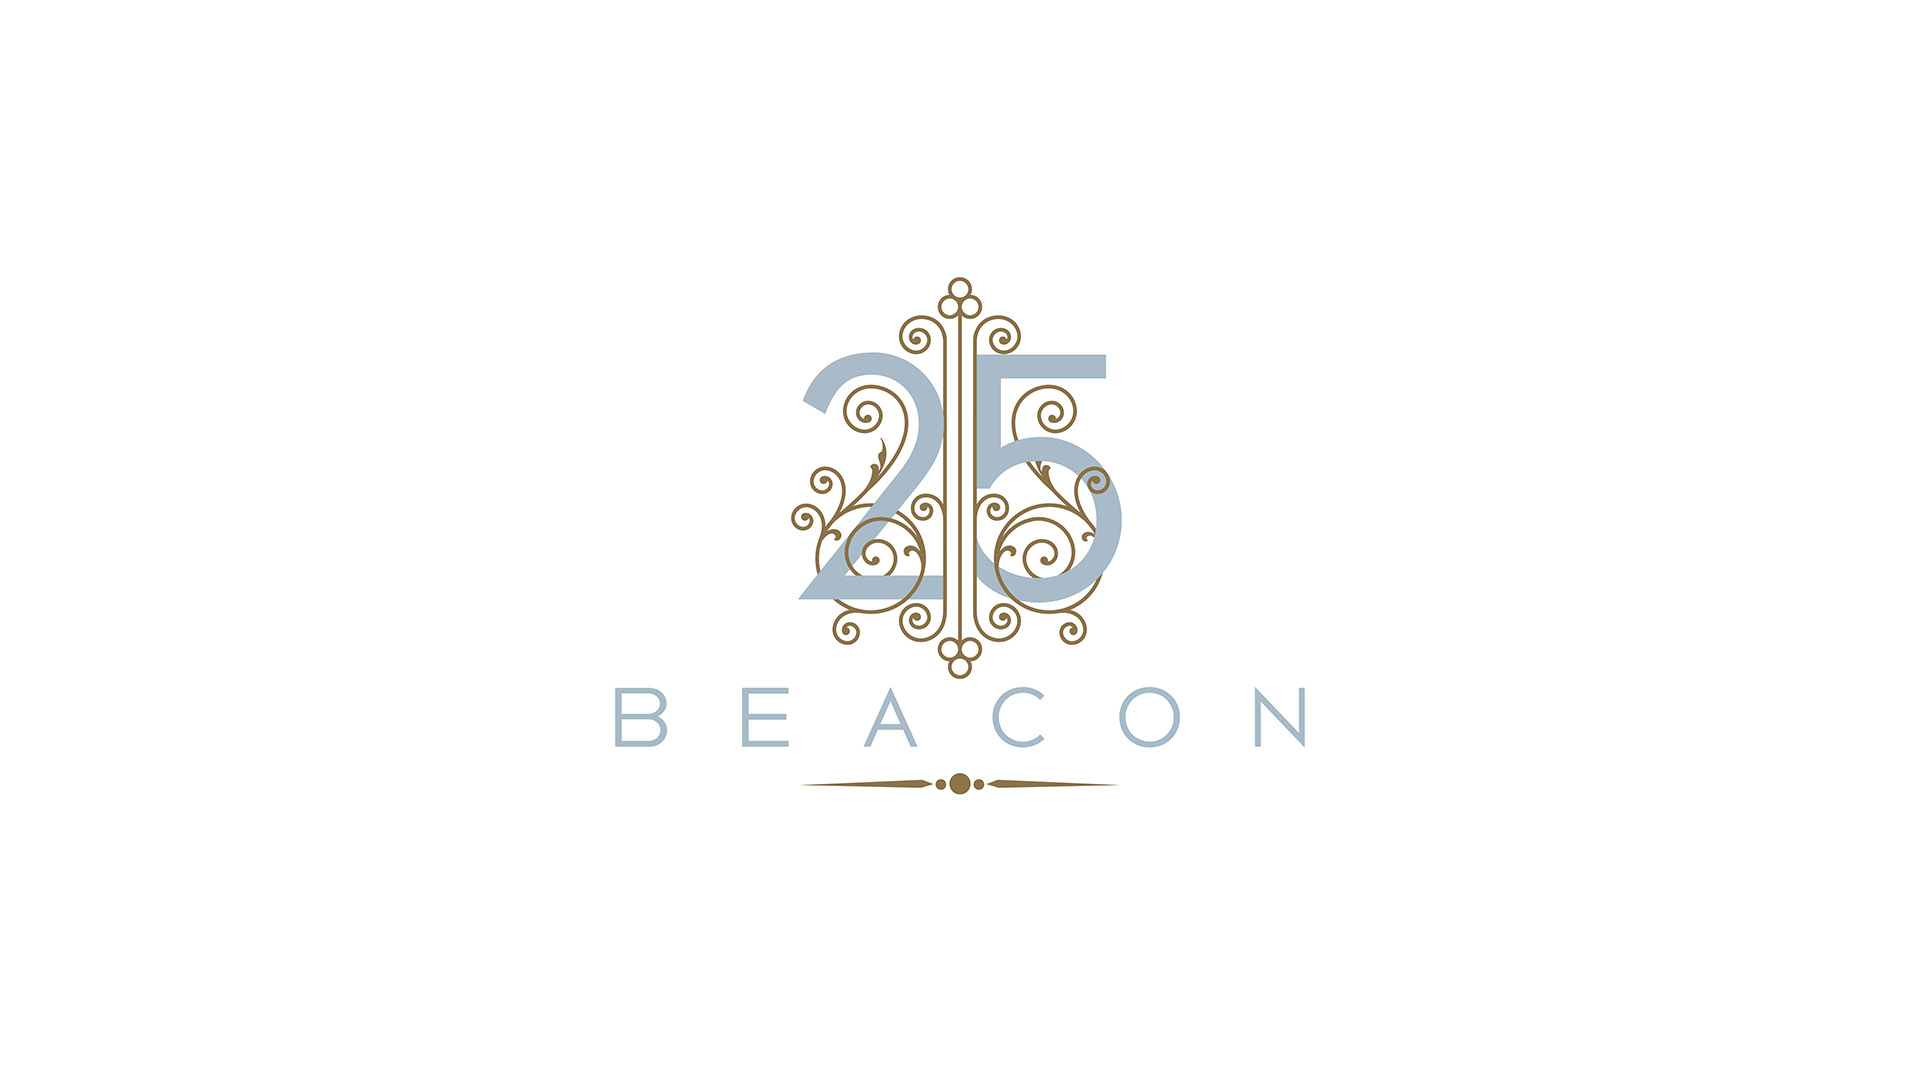 25 beacon logo on white